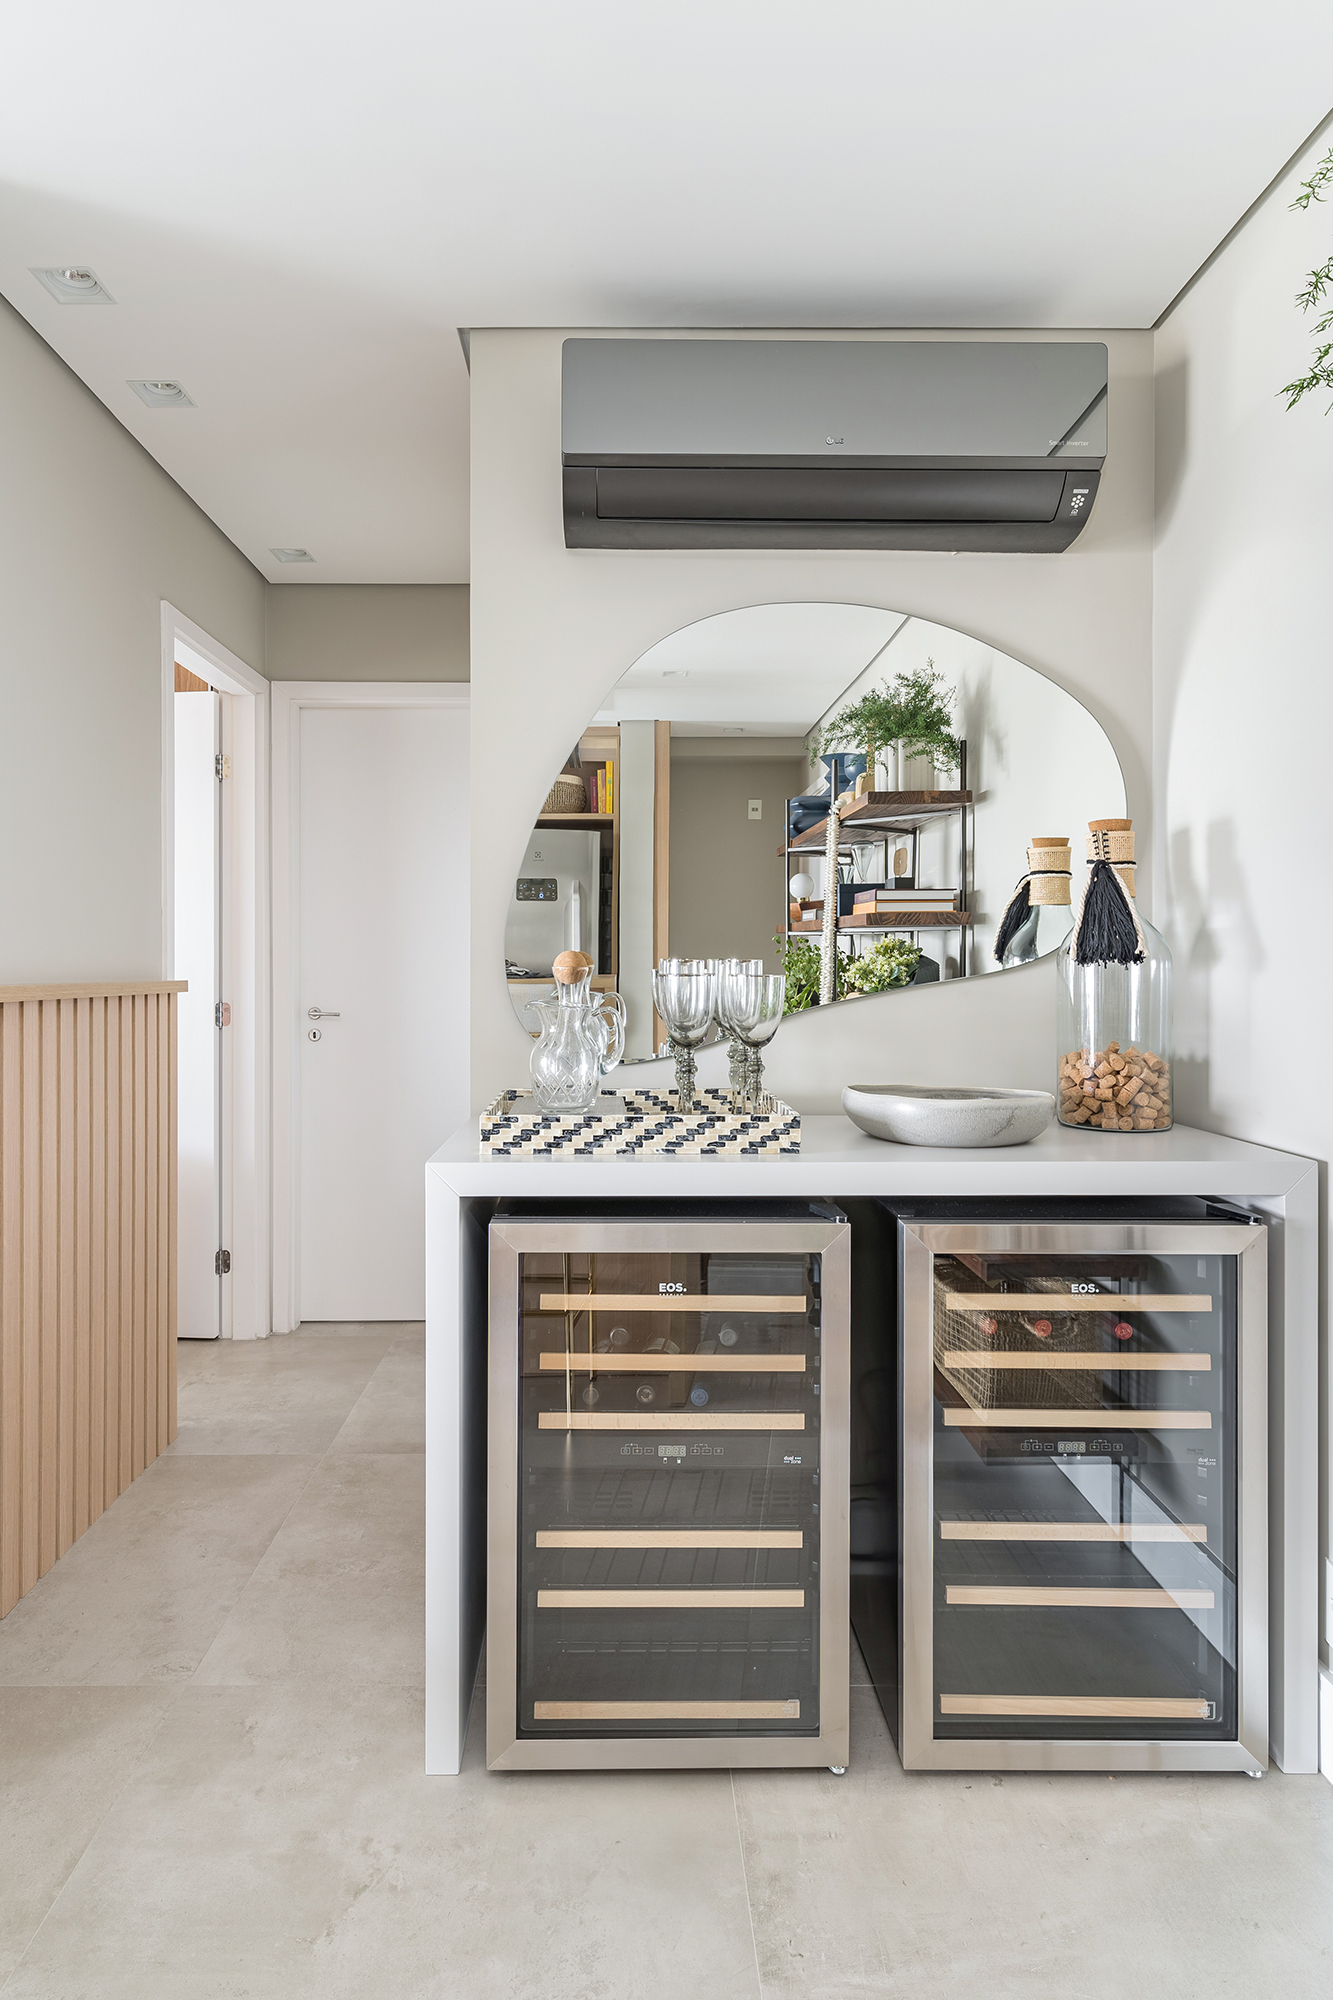 Apartamento de 60 m² ganha décor delicado repleto de madeira e plantas. Projeto de Bia Hajnal. Na foto, bar com adega e espelho orgânico.